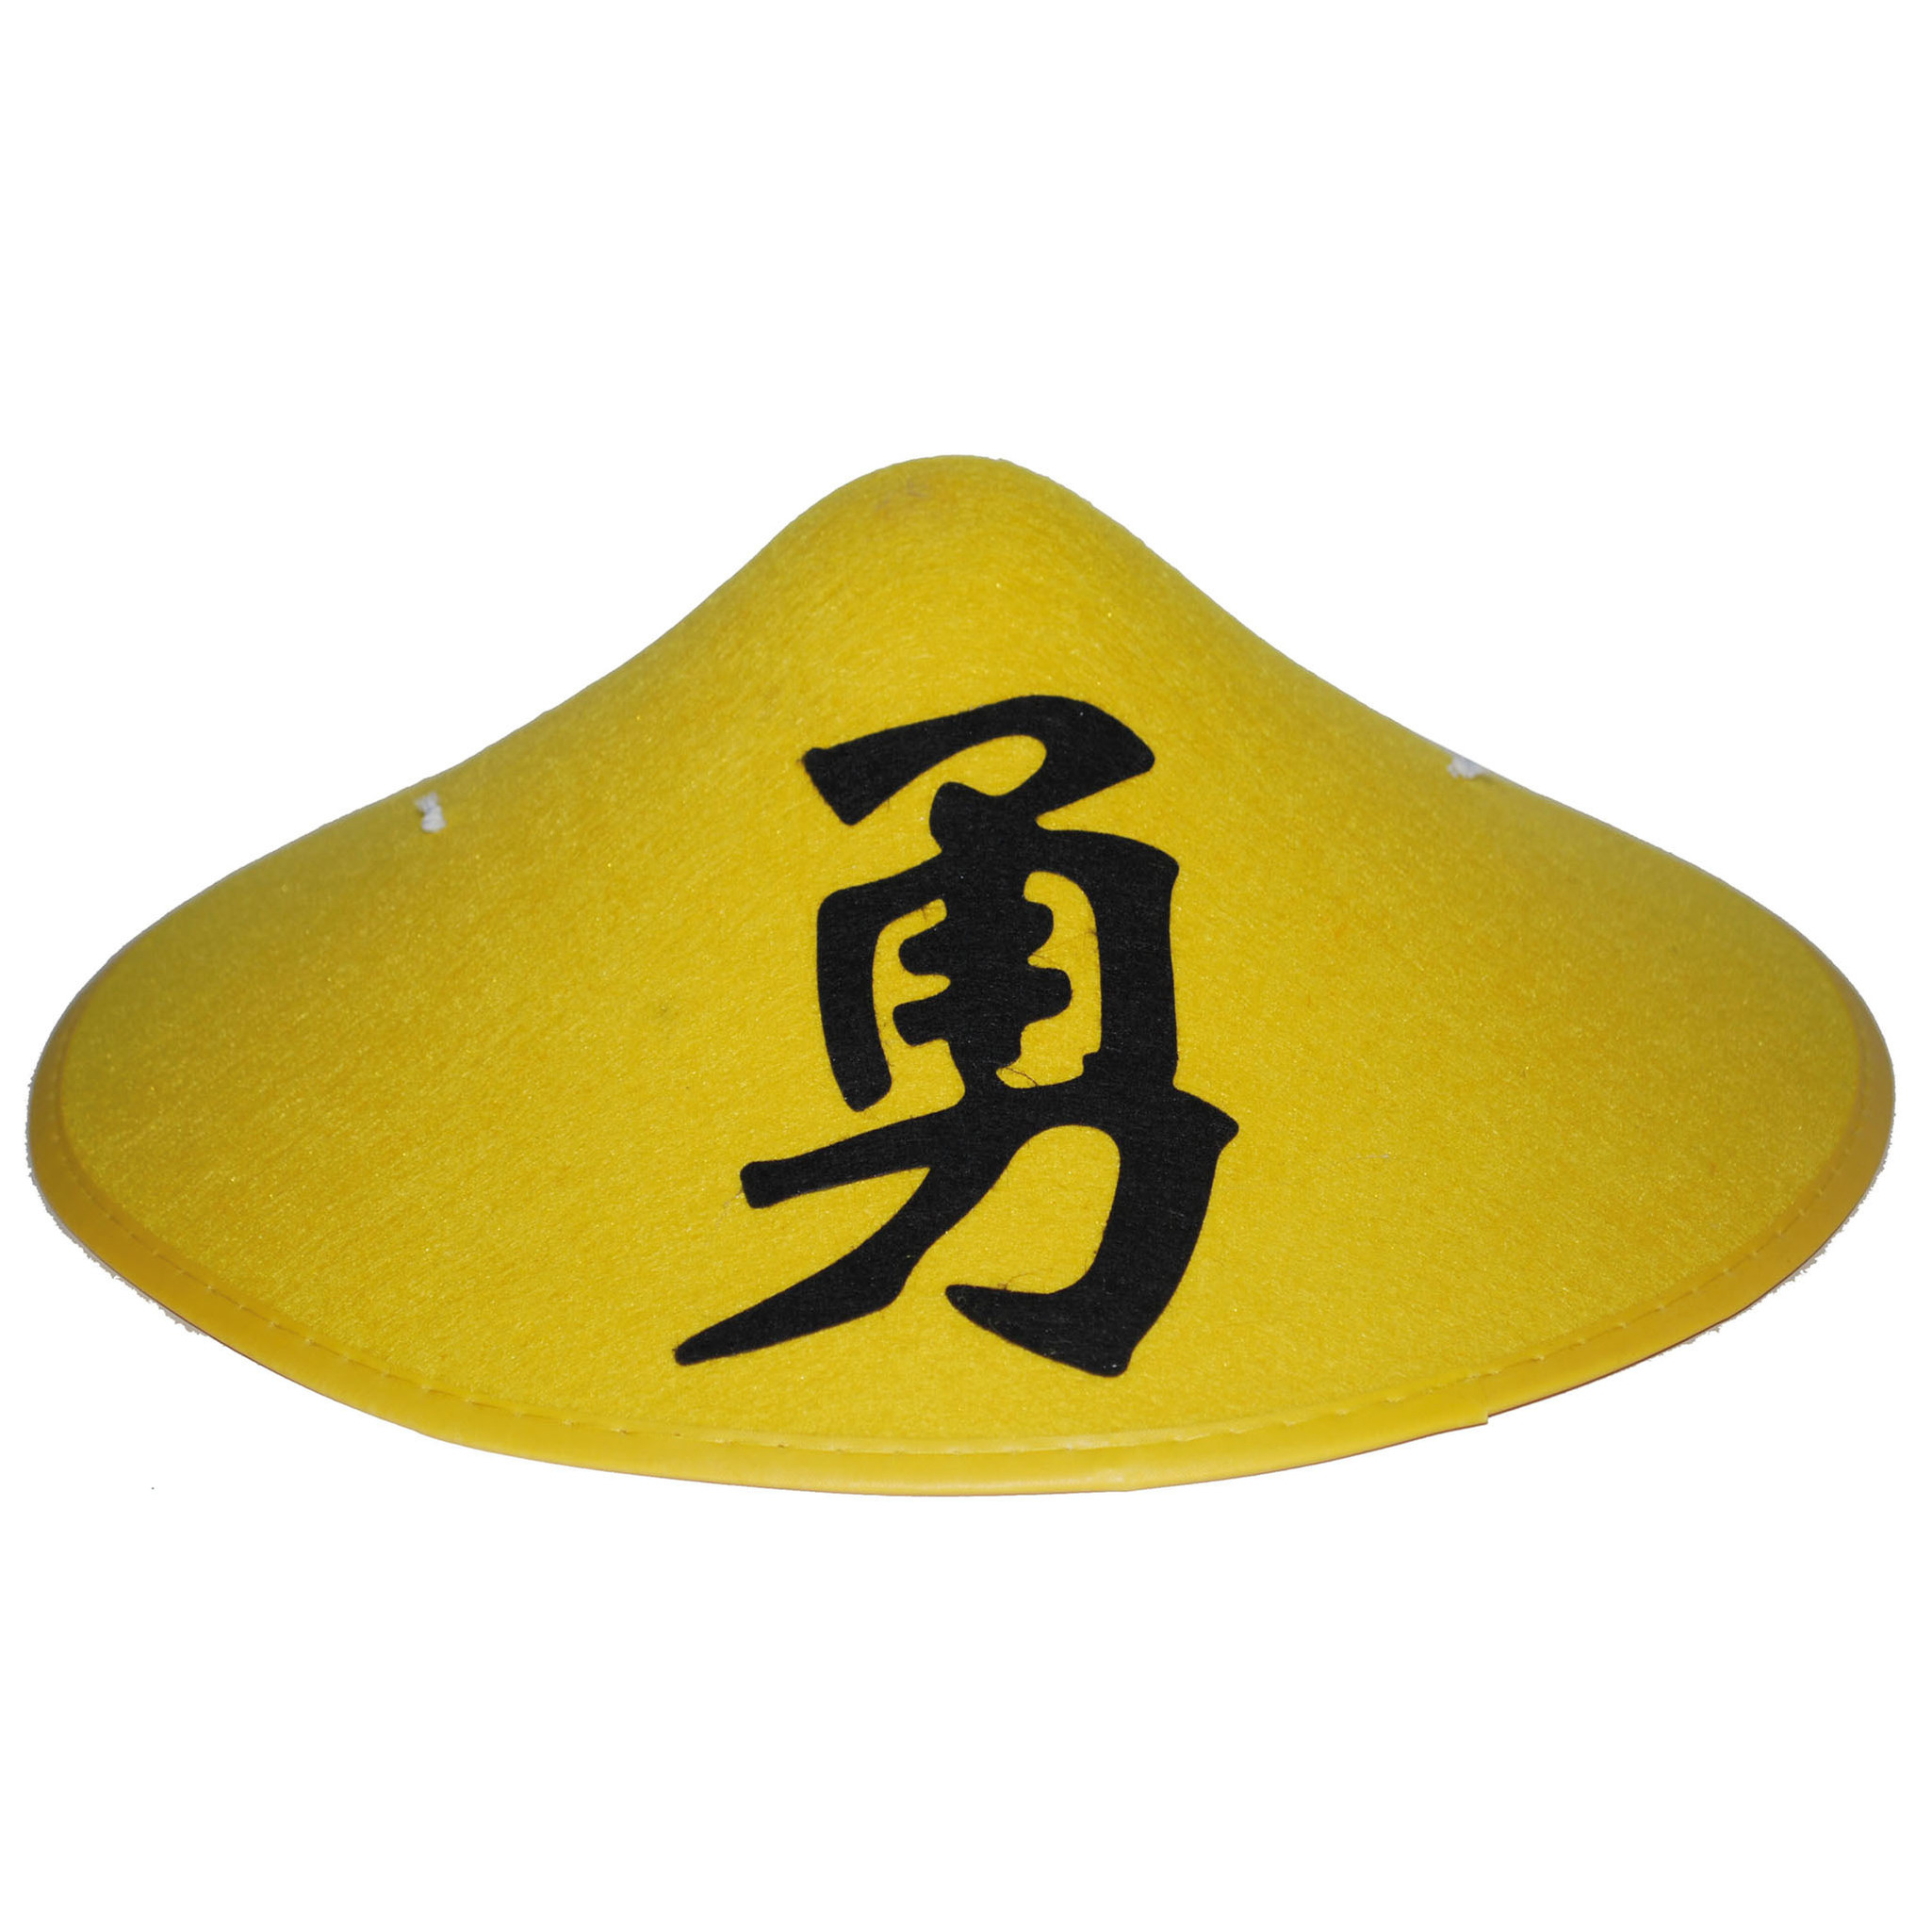 Chinese verkleed hoed geel met teken